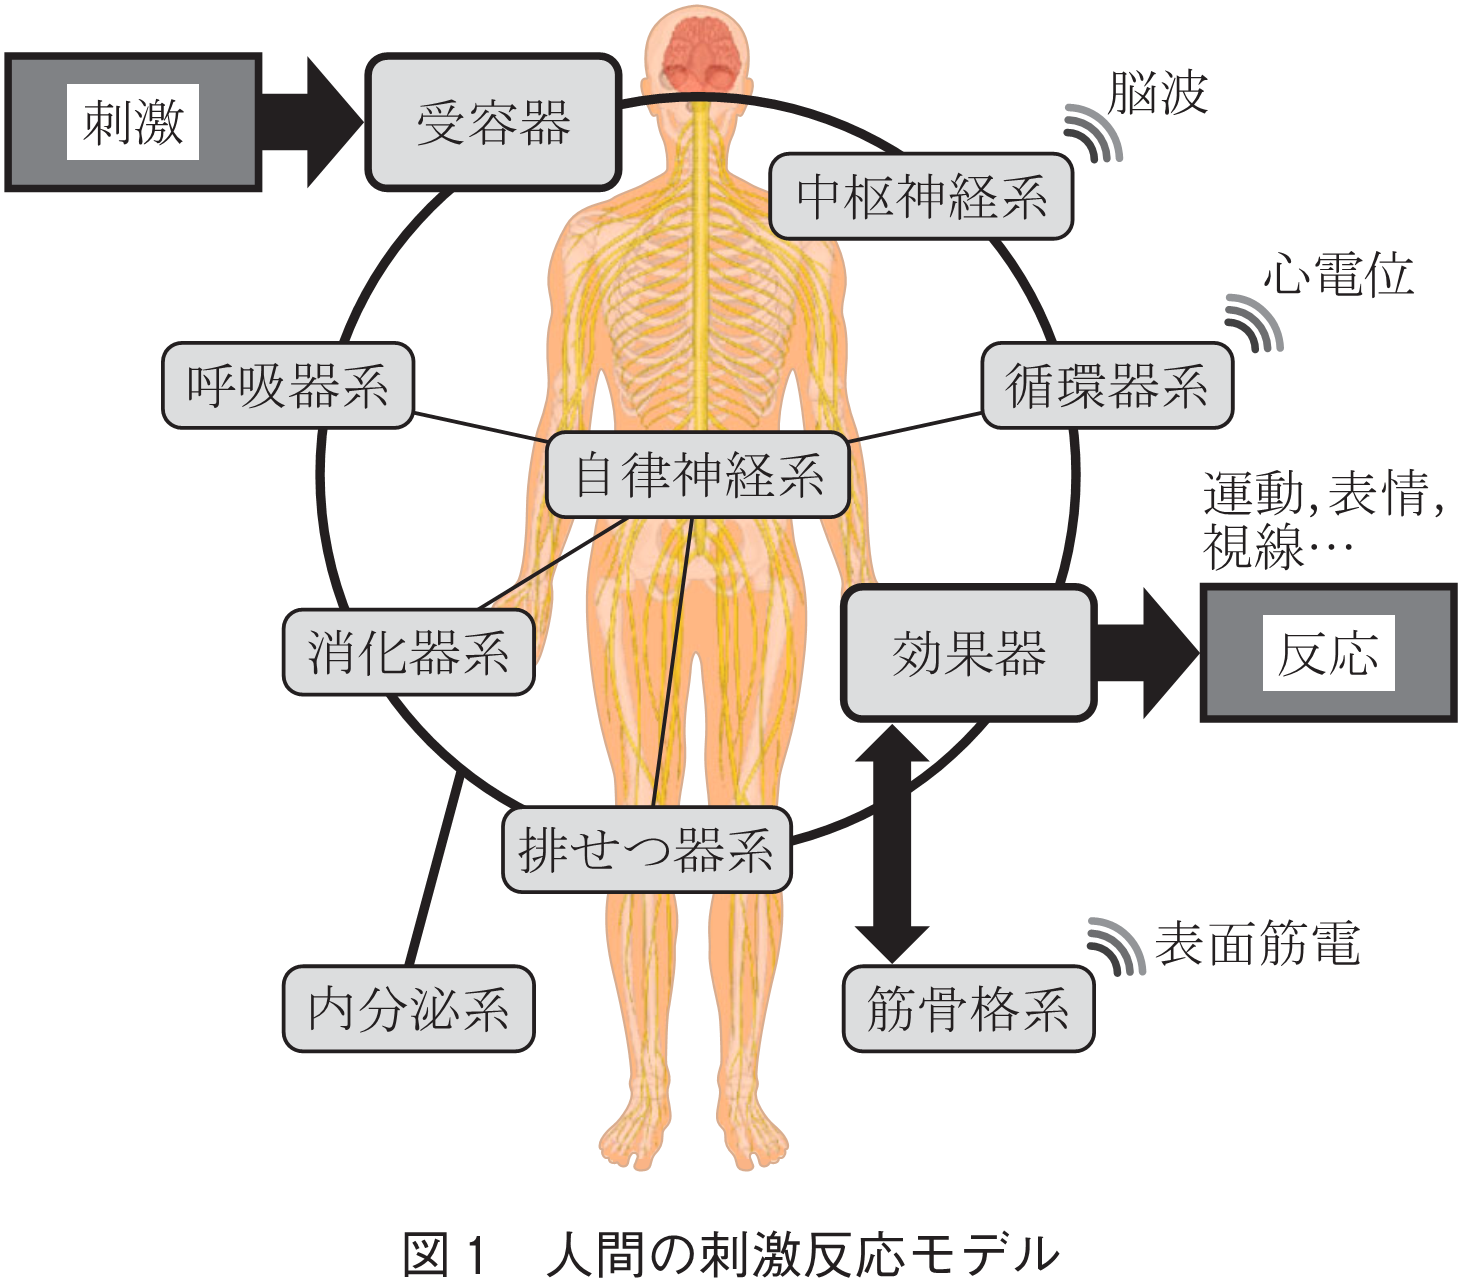 図1 人間の刺激反応モデル